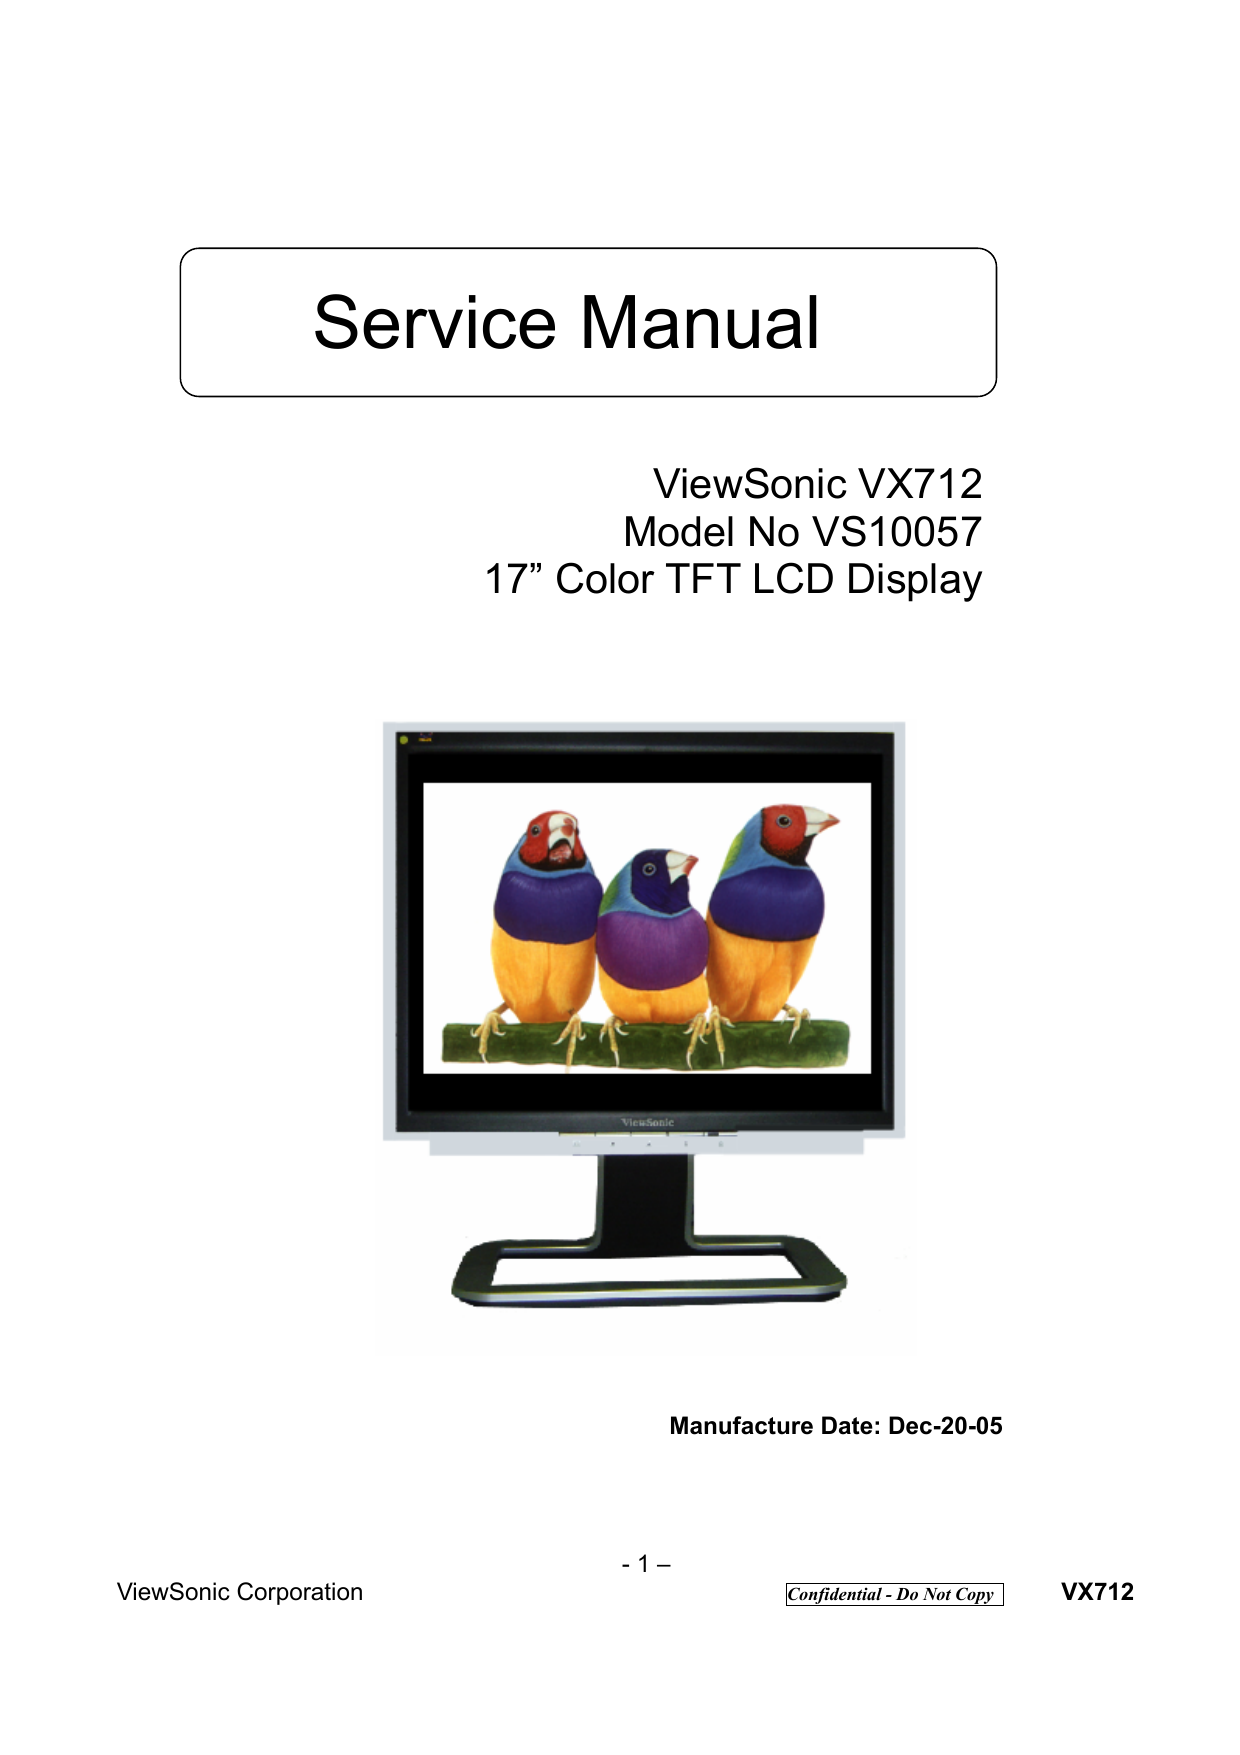 optiquest monitor q9b-2 manual